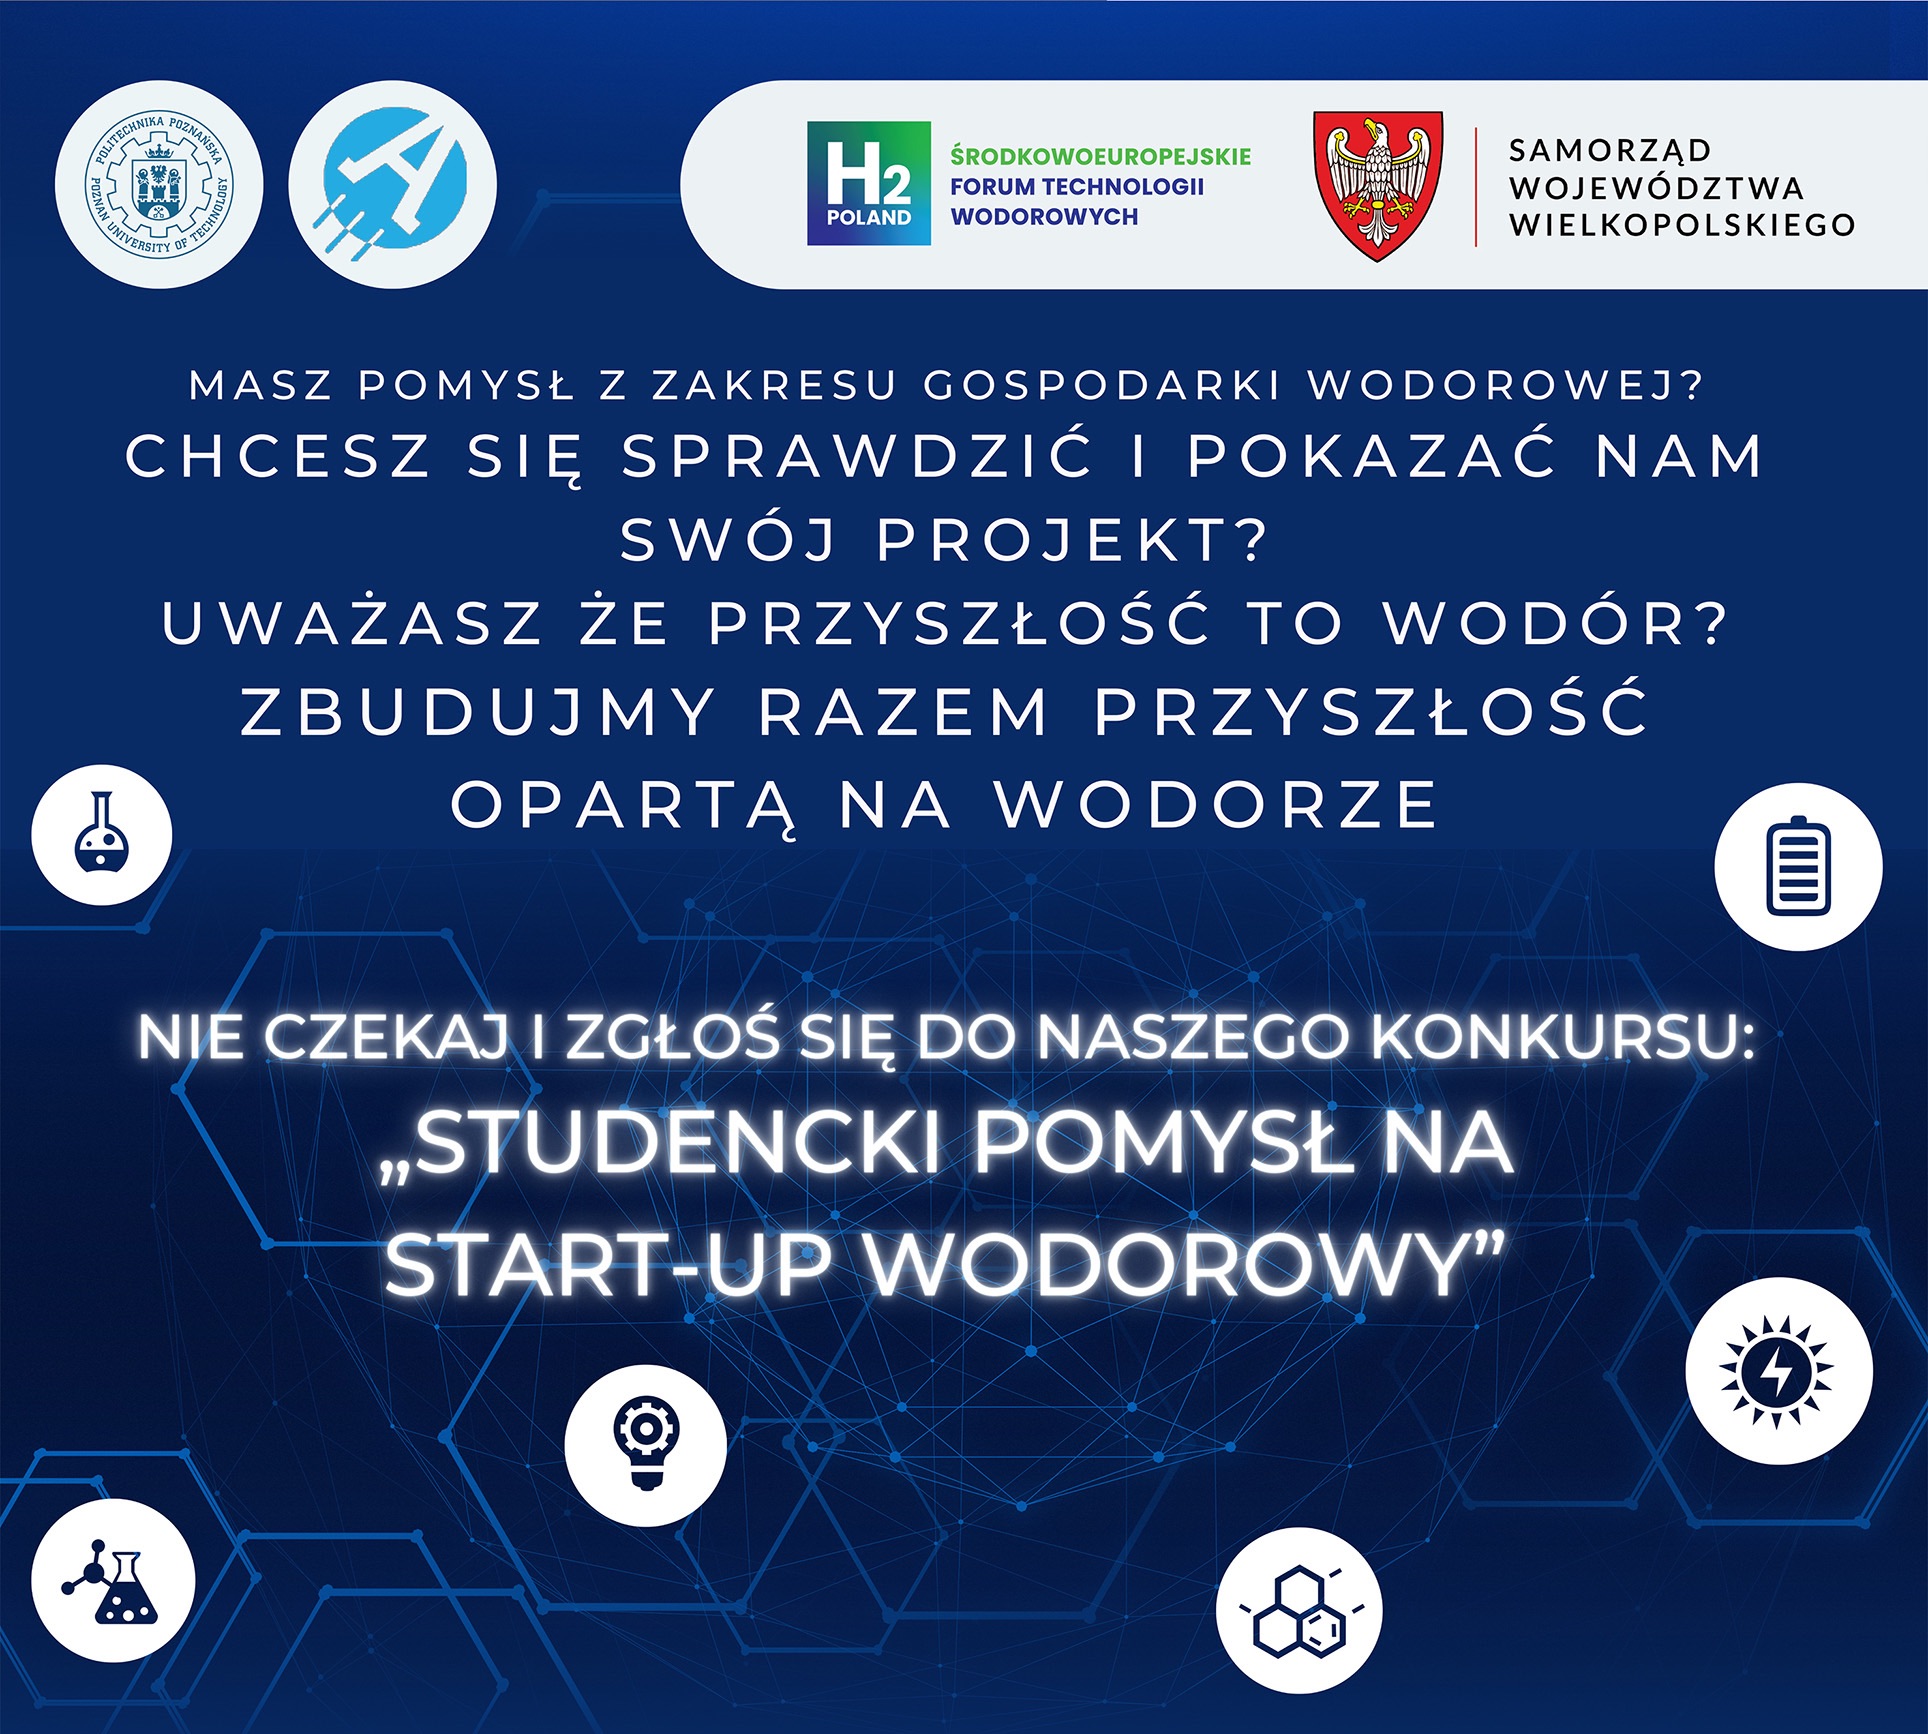 studencki_pomysl_na_start-up_wodorowy_etap